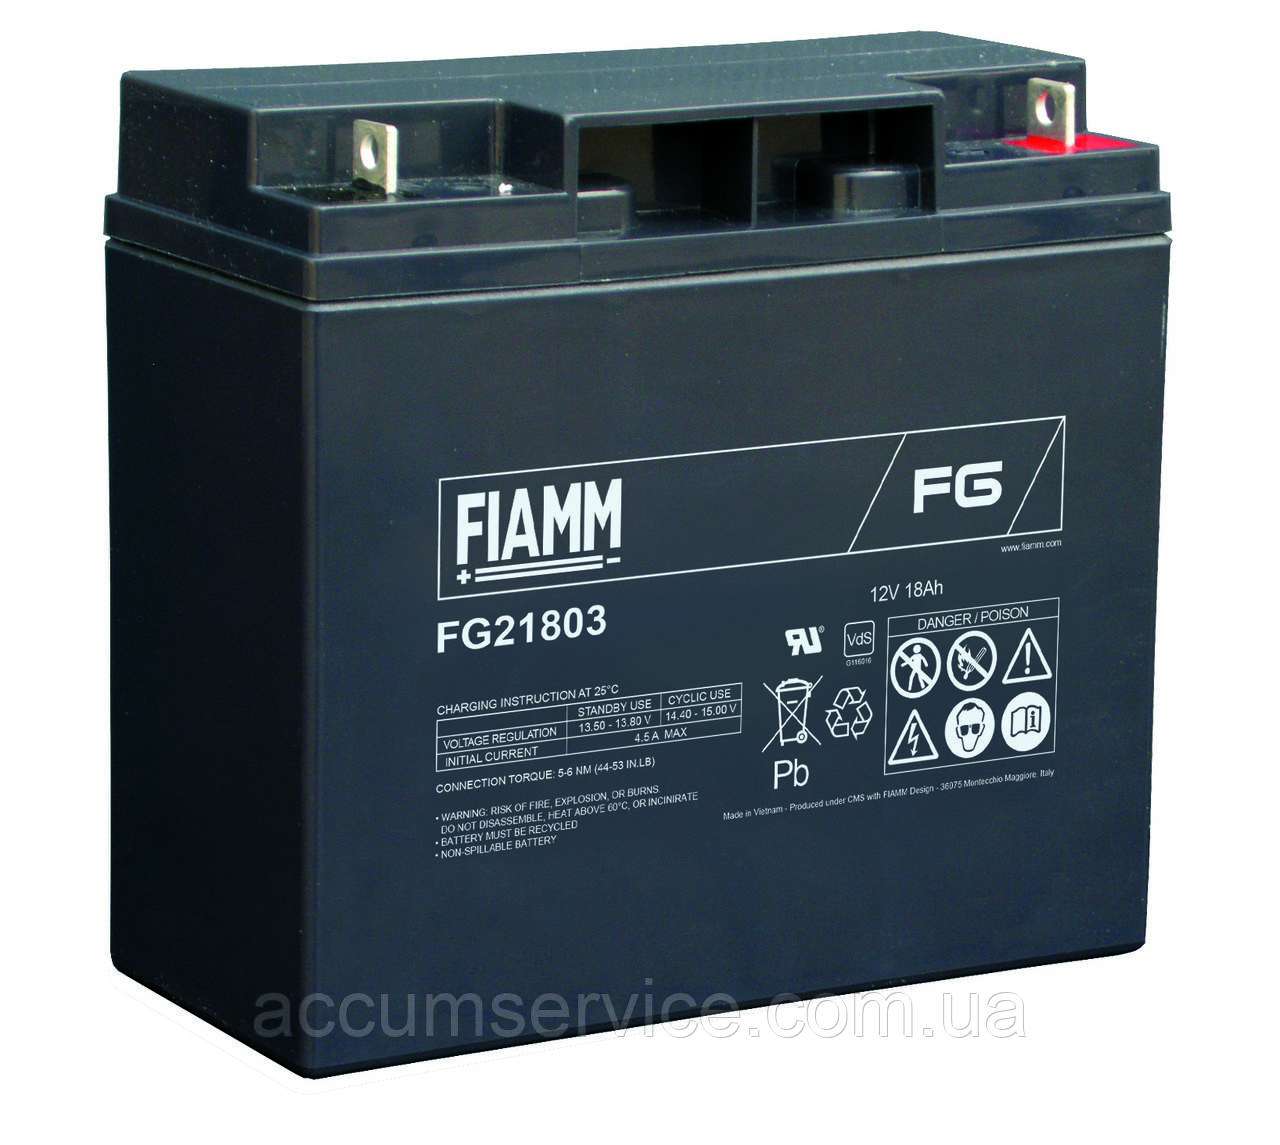 Акумулятор FIAMM FG 21803 — 12 V 18 Ah